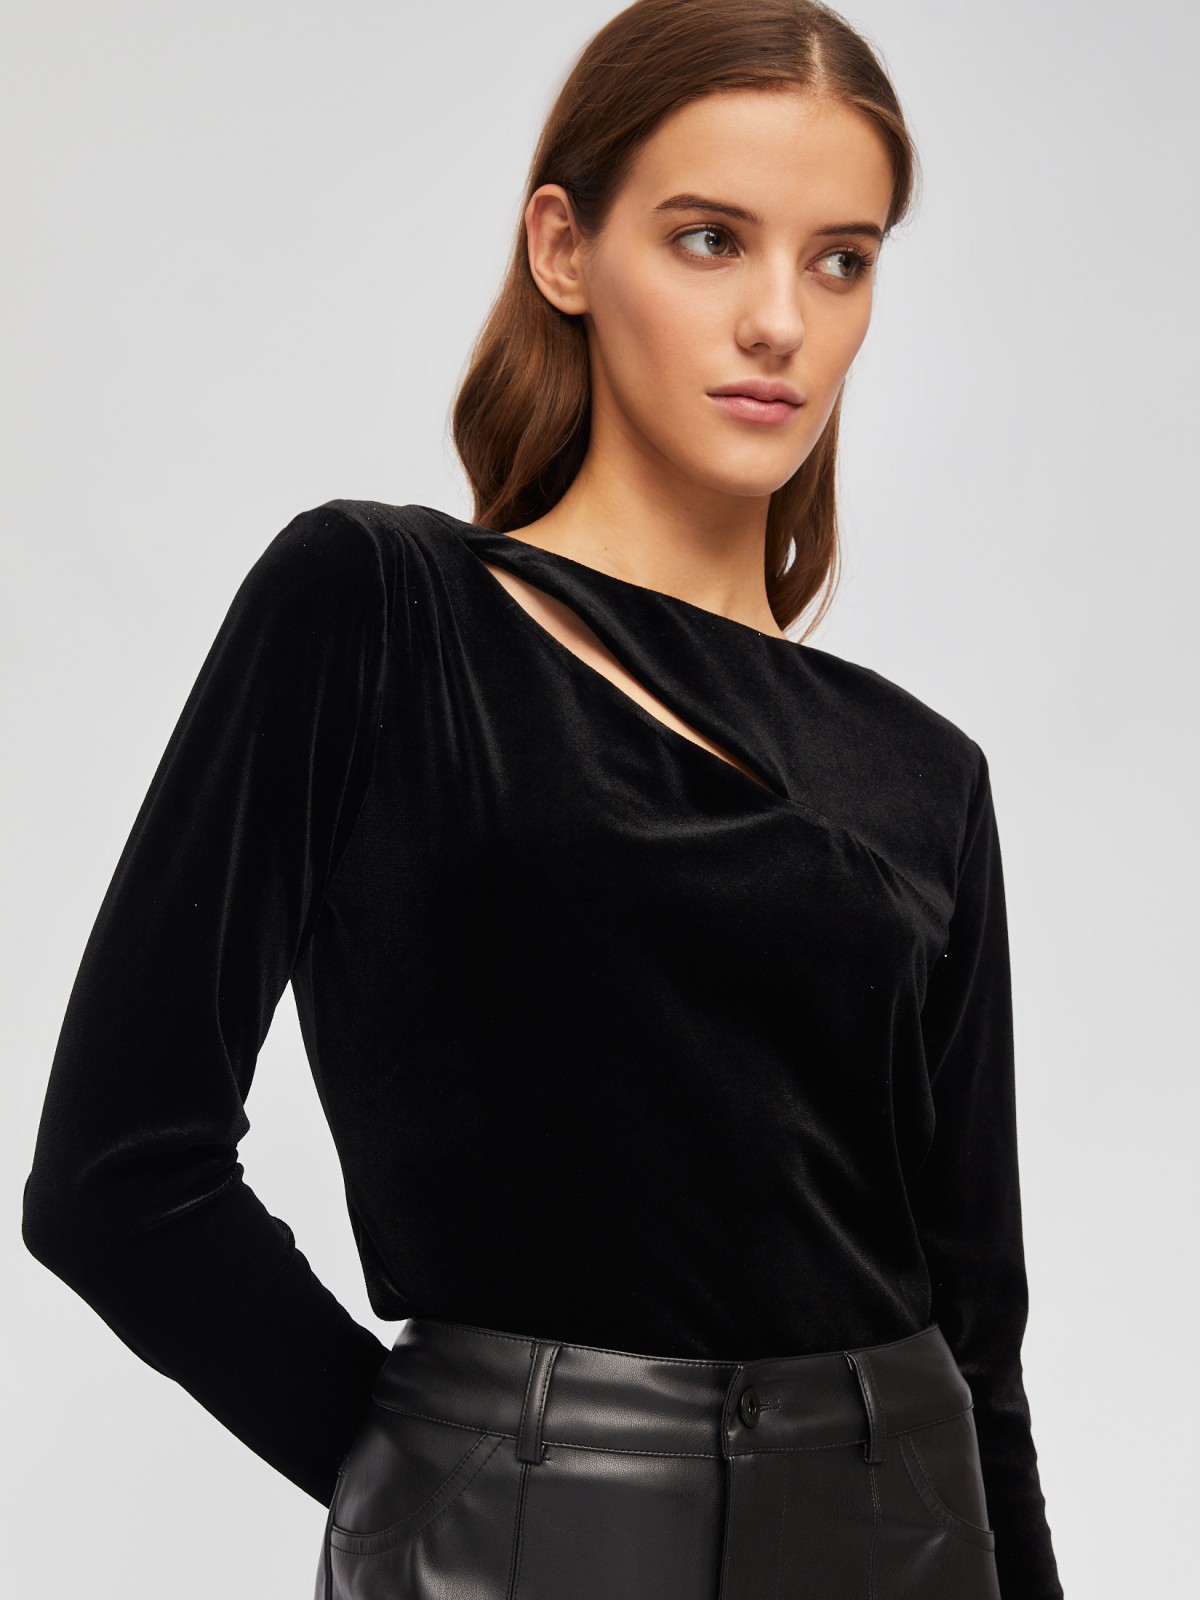 Бархатная блузка-лонгслив с разрезом и драпировкой zolla 02345114Y021, цвет черный, размер XS - фото 3